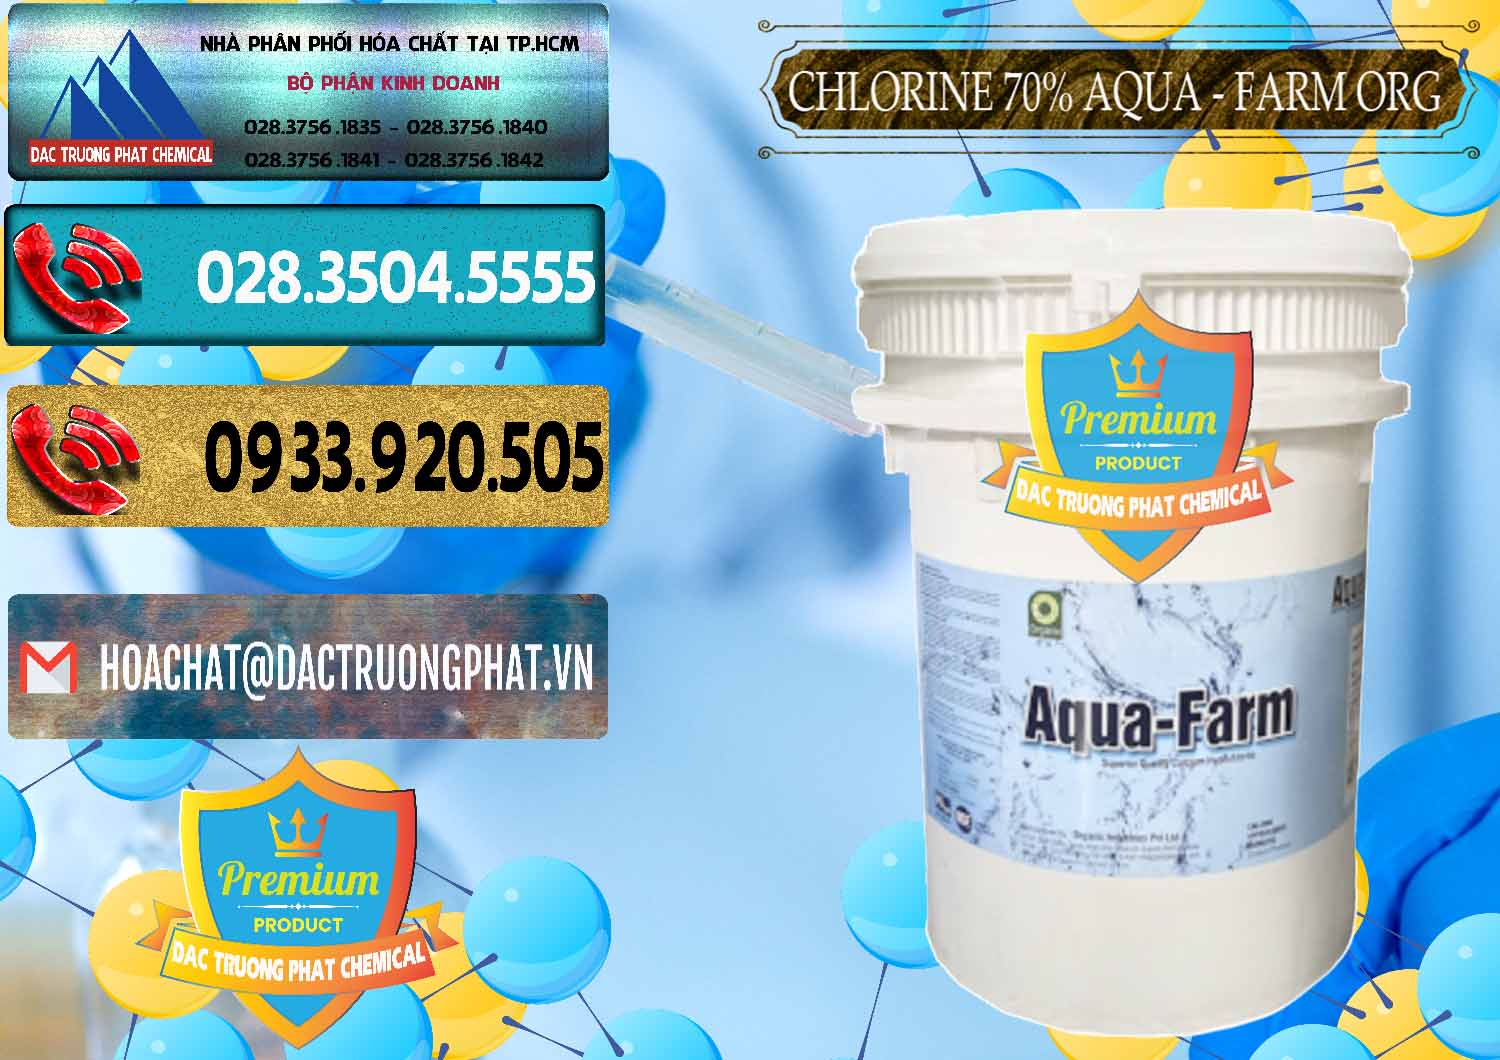 Đơn vị cung cấp _ bán Chlorine – Clorin 70% Aqua - Farm ORG Organic Ấn Độ India - 0246 - Cung cấp & nhập khẩu hóa chất tại TP.HCM - hoachatdetnhuom.com